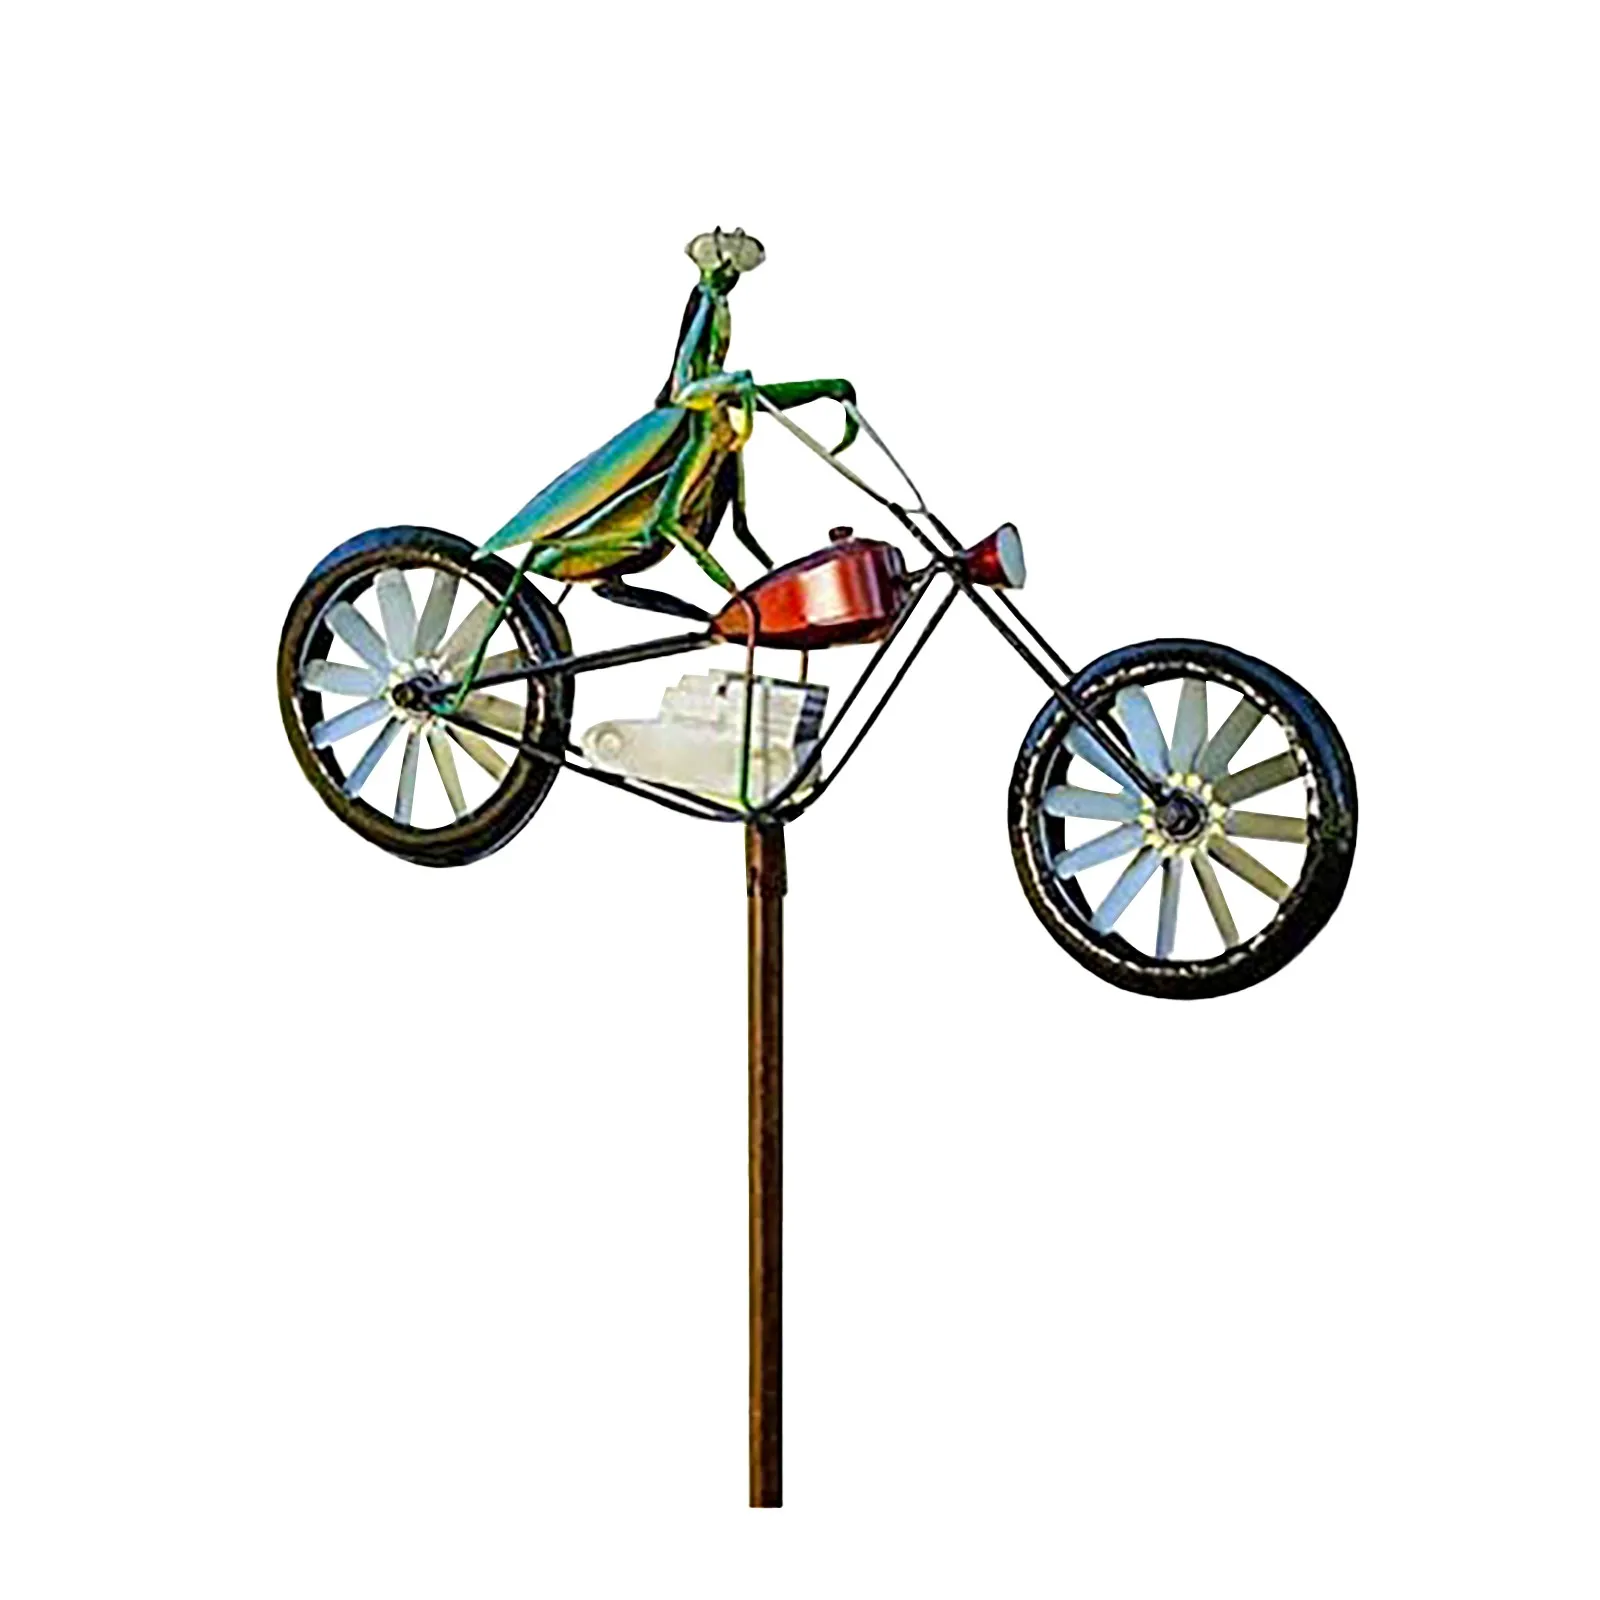 Handgemachte Cartoon Tier Metall Windmühle Gartenstecker Gartenfigur Frosch Deko A mit stecker frösche auf einem Fahrrad Metall Garten Wind Spinner QASIMOF Vintage Frosch Garten Windrad Deko 